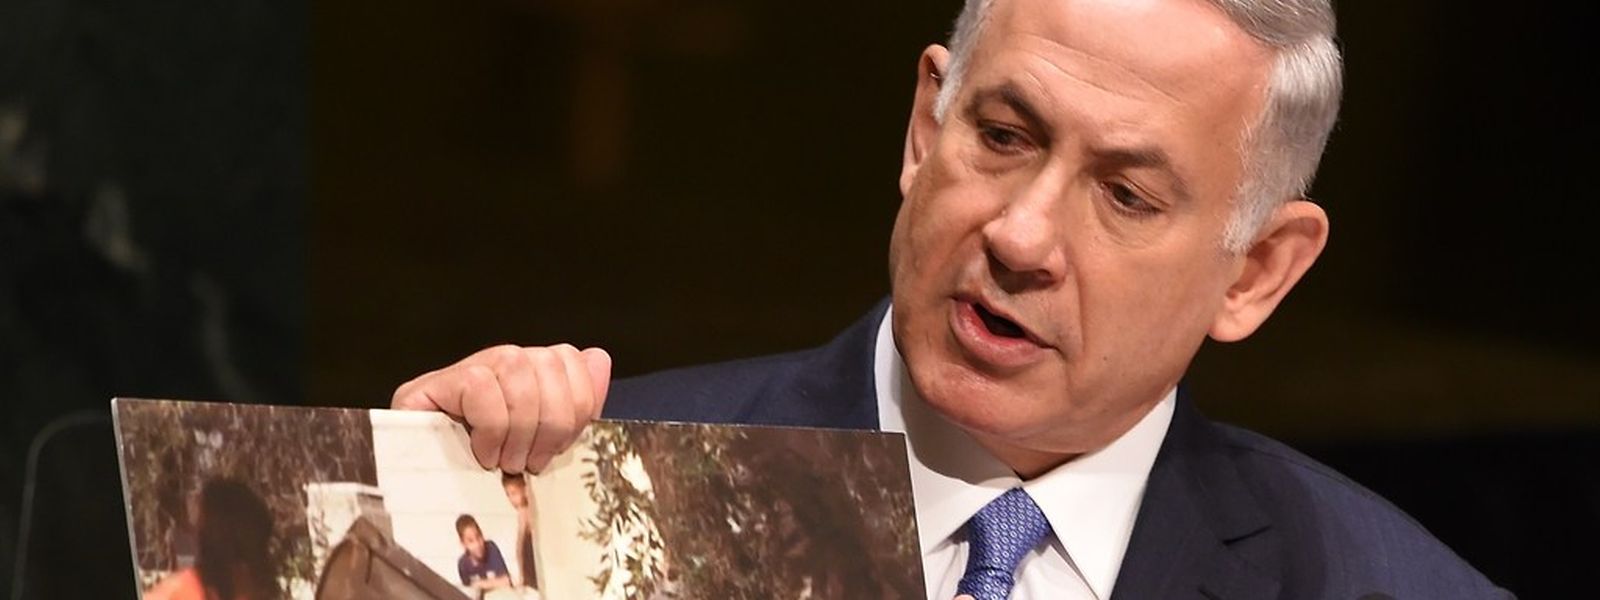 Der israelische Premier Benjamin Netanyahu hatte mit seiner Äußerung vor der UN-Vollversammlung für Aufregung gesorgt.